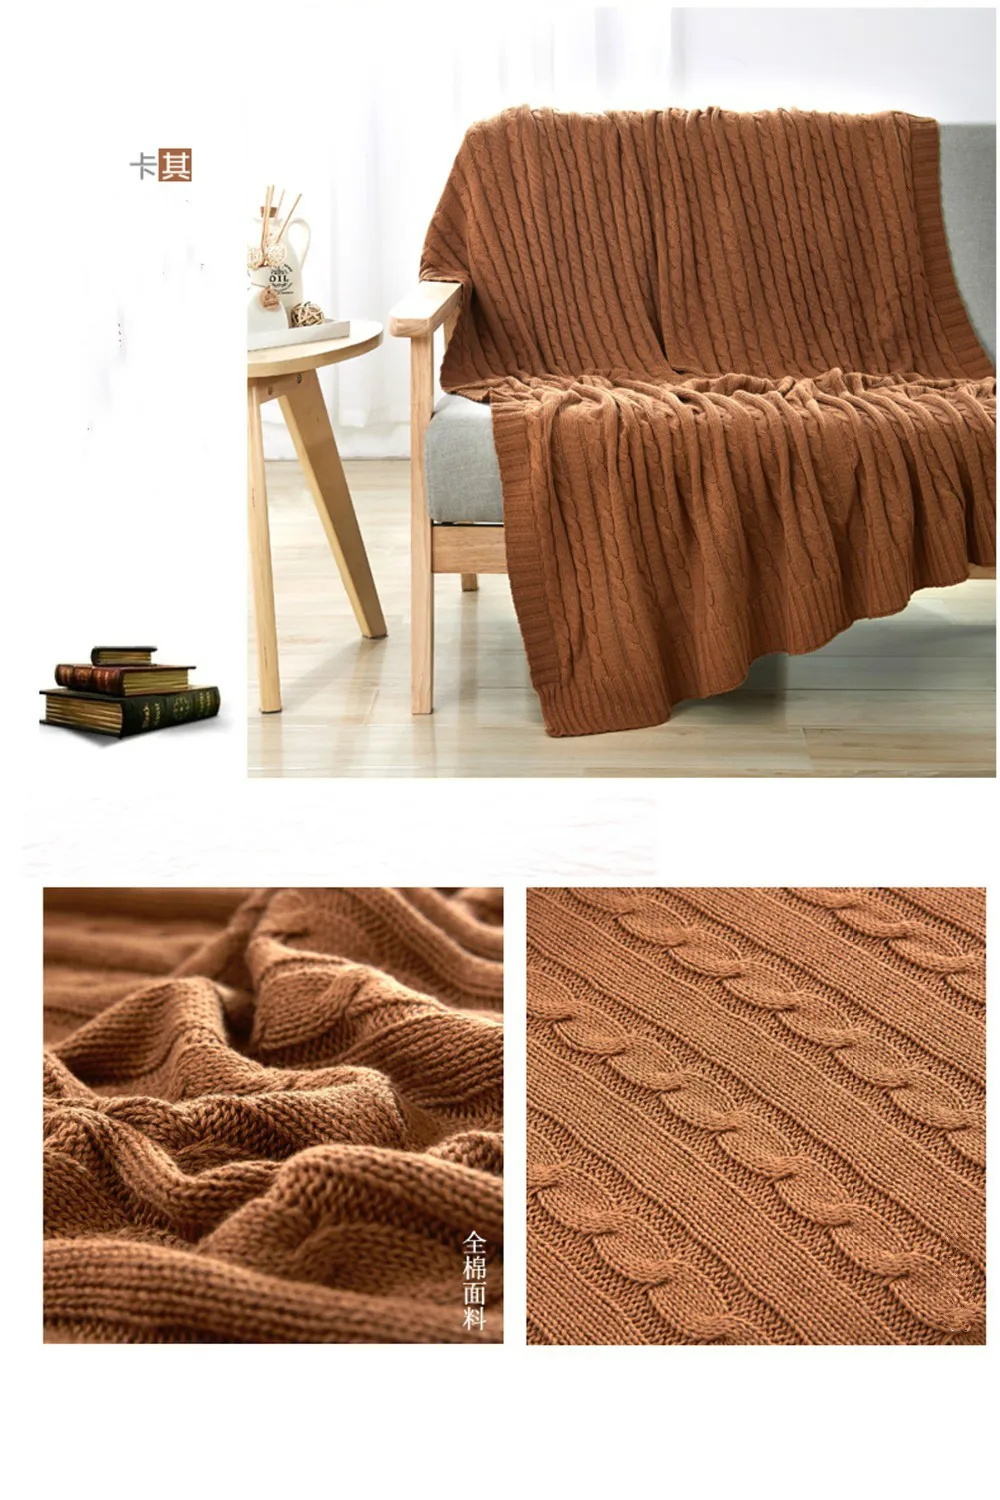 Высокие качественные одеяла хлопок, бежевый, коричневый, зеленый и другие Мульти-Цвет диван-кровать/кровать, Всесезонная одежда может быть использован